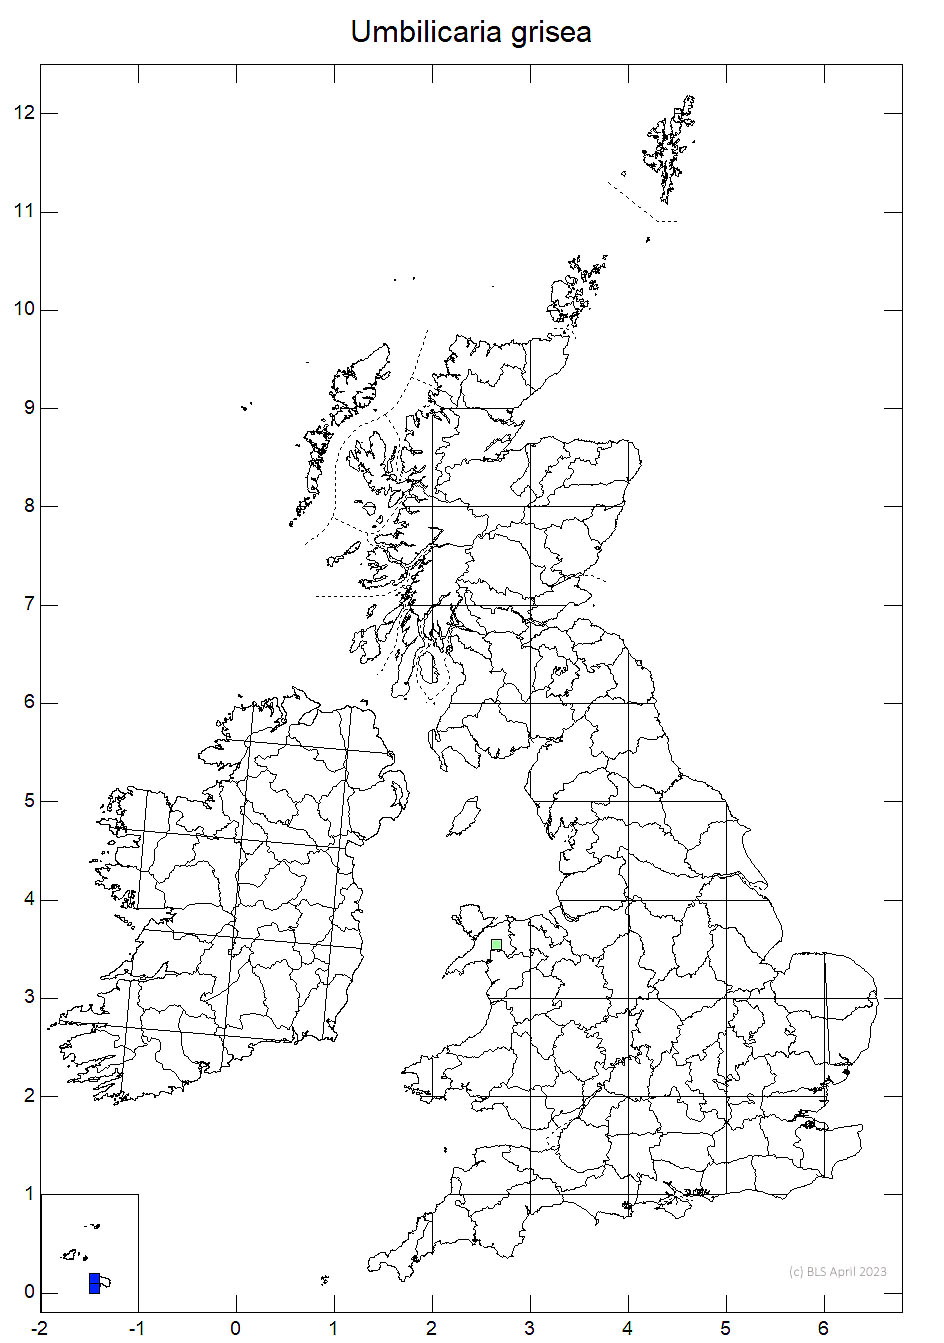 Umbilicaria grisea 10km sq distribution map